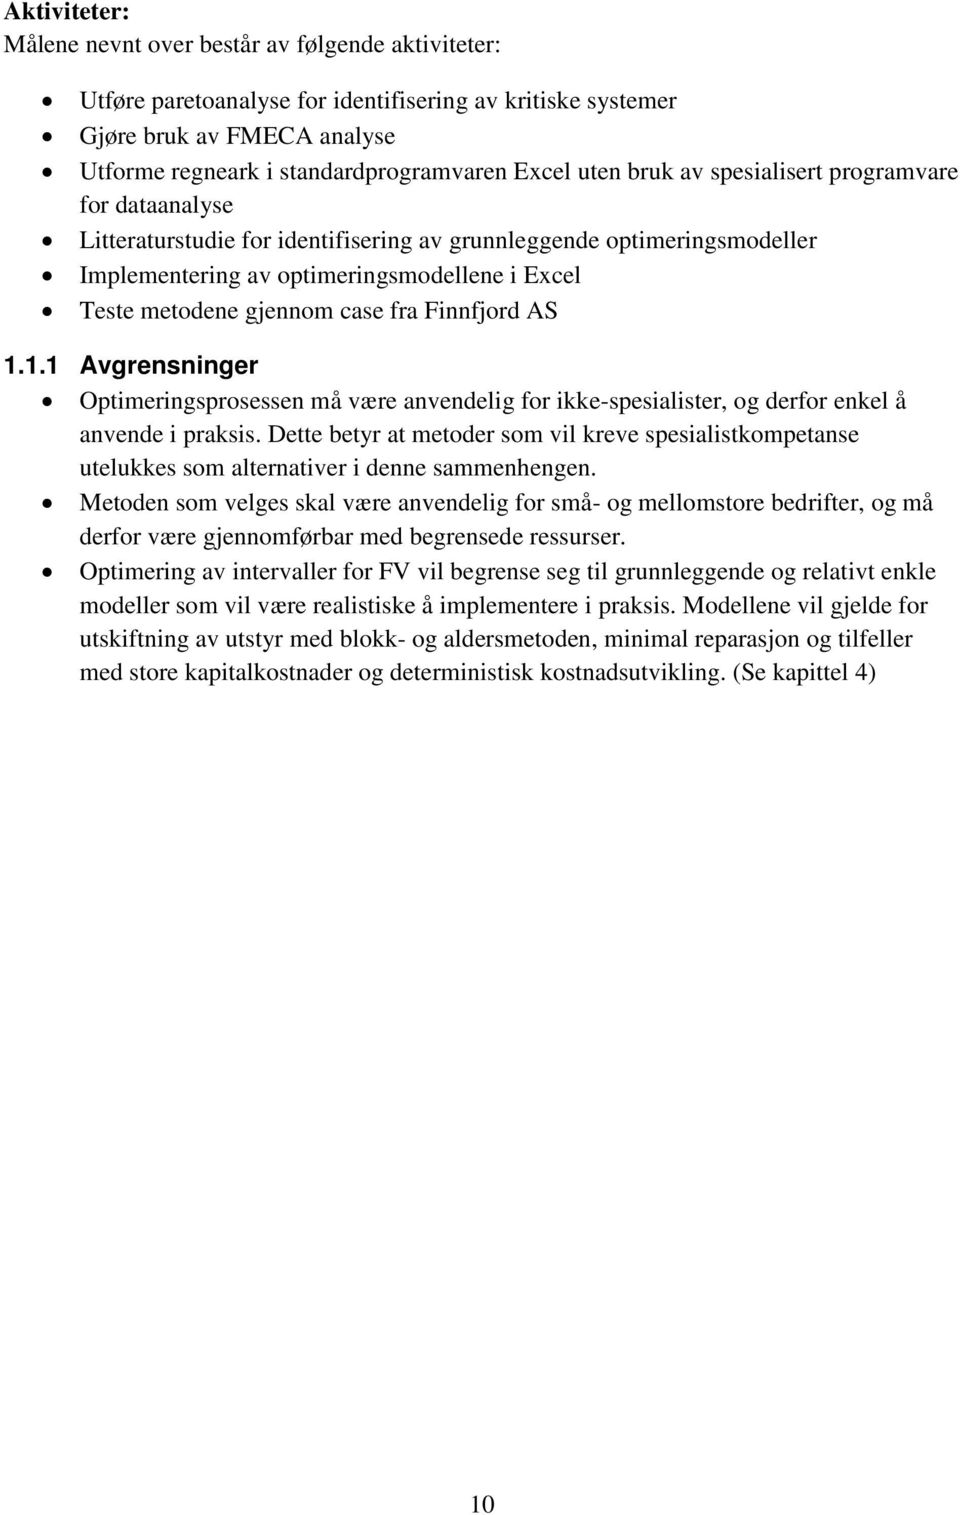 case fra Finnfjord AS 1.1.1 Avgrensninger Optimeringsprosessen må være anvendelig for ikke-spesialister, og derfor enkel å anvende i praksis.